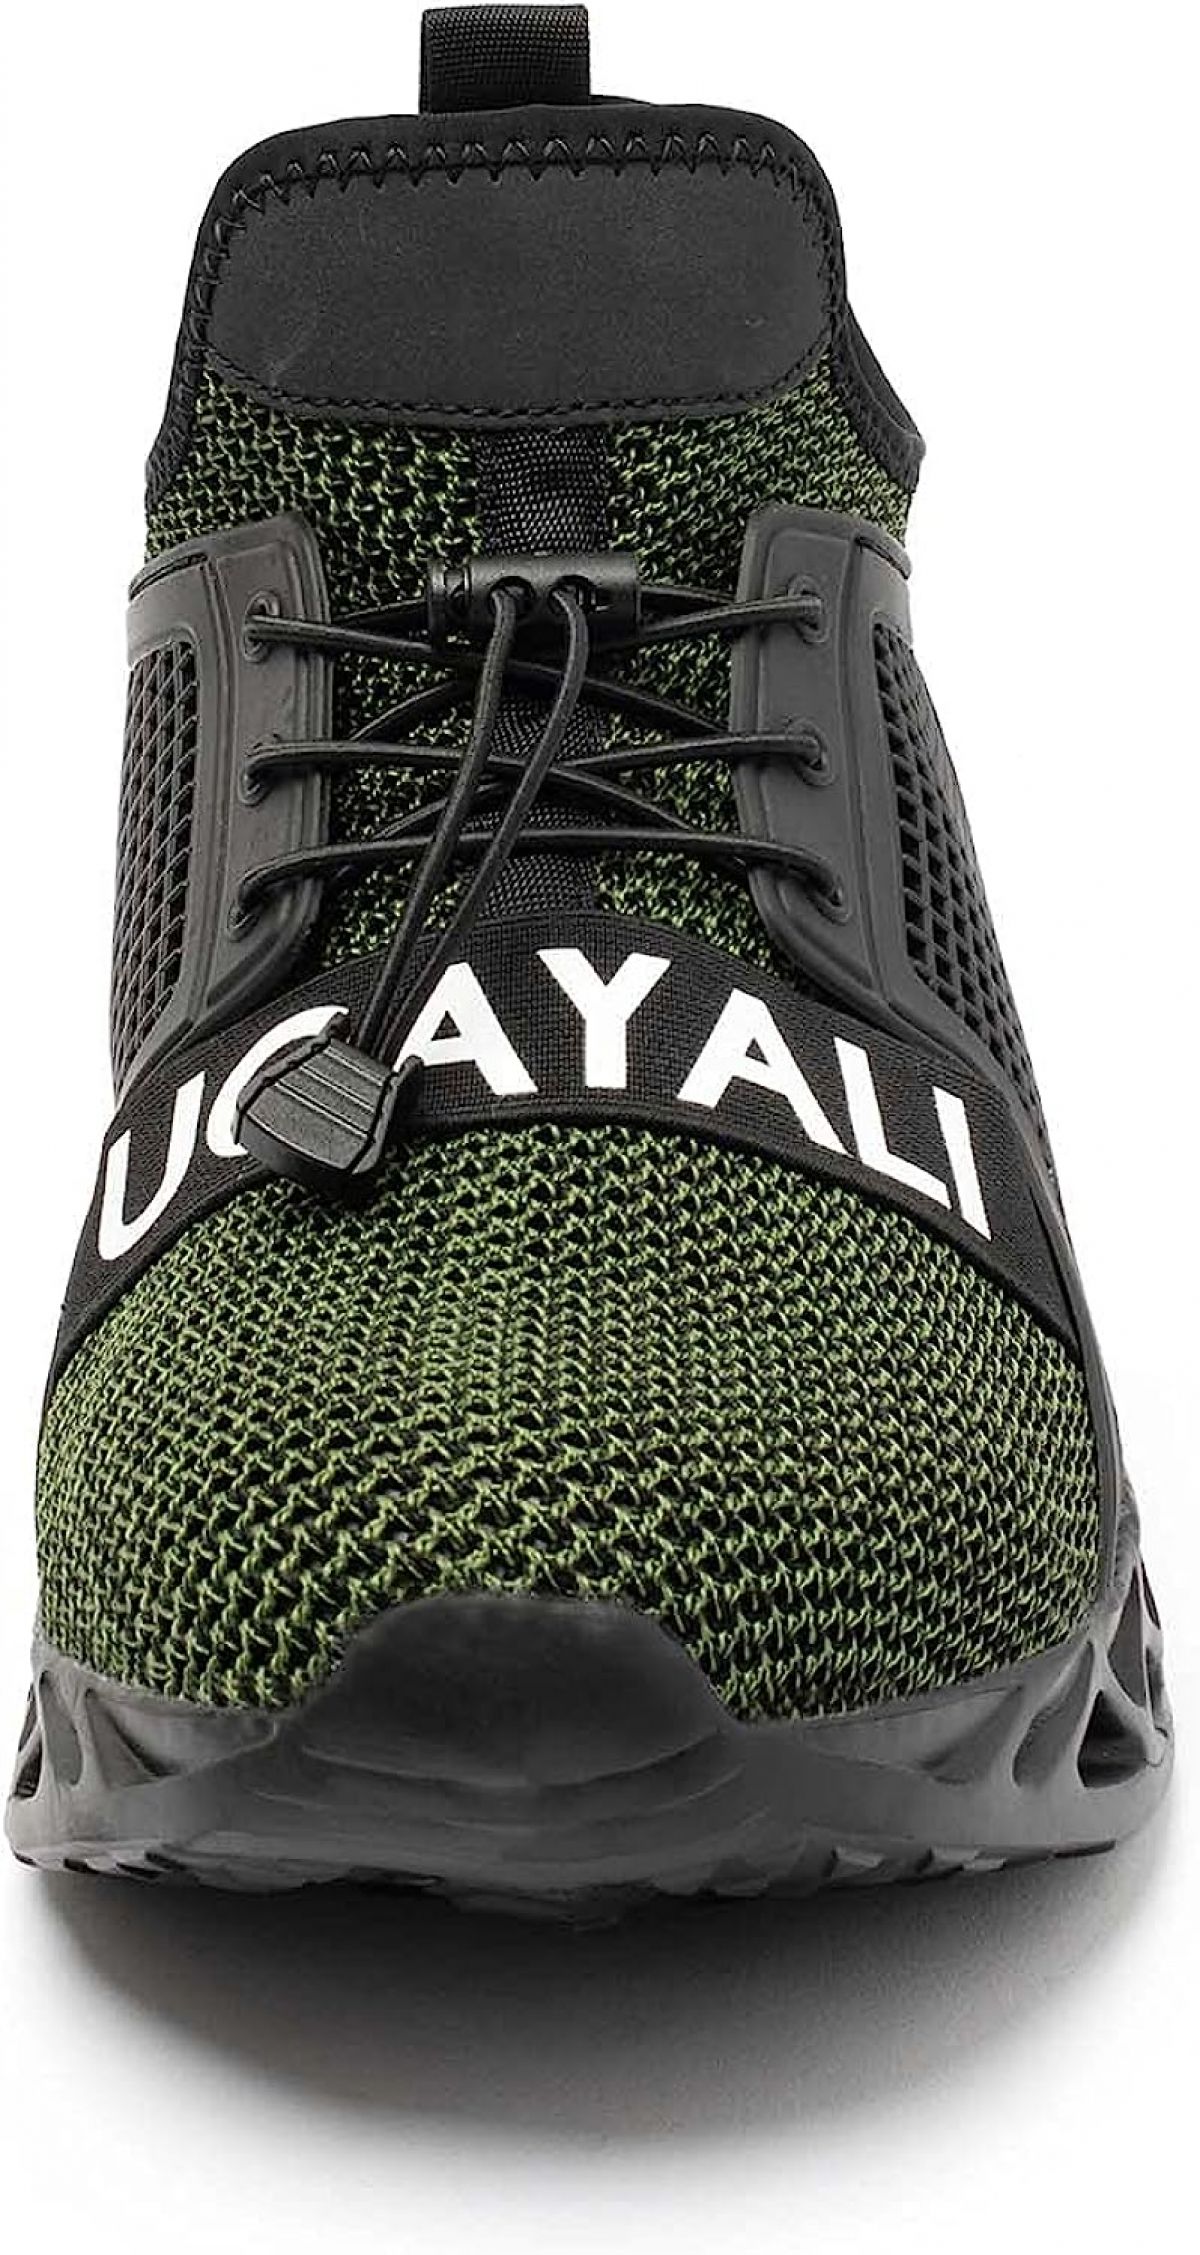 Защитная обувь Ucayali, зеленый, размер 39